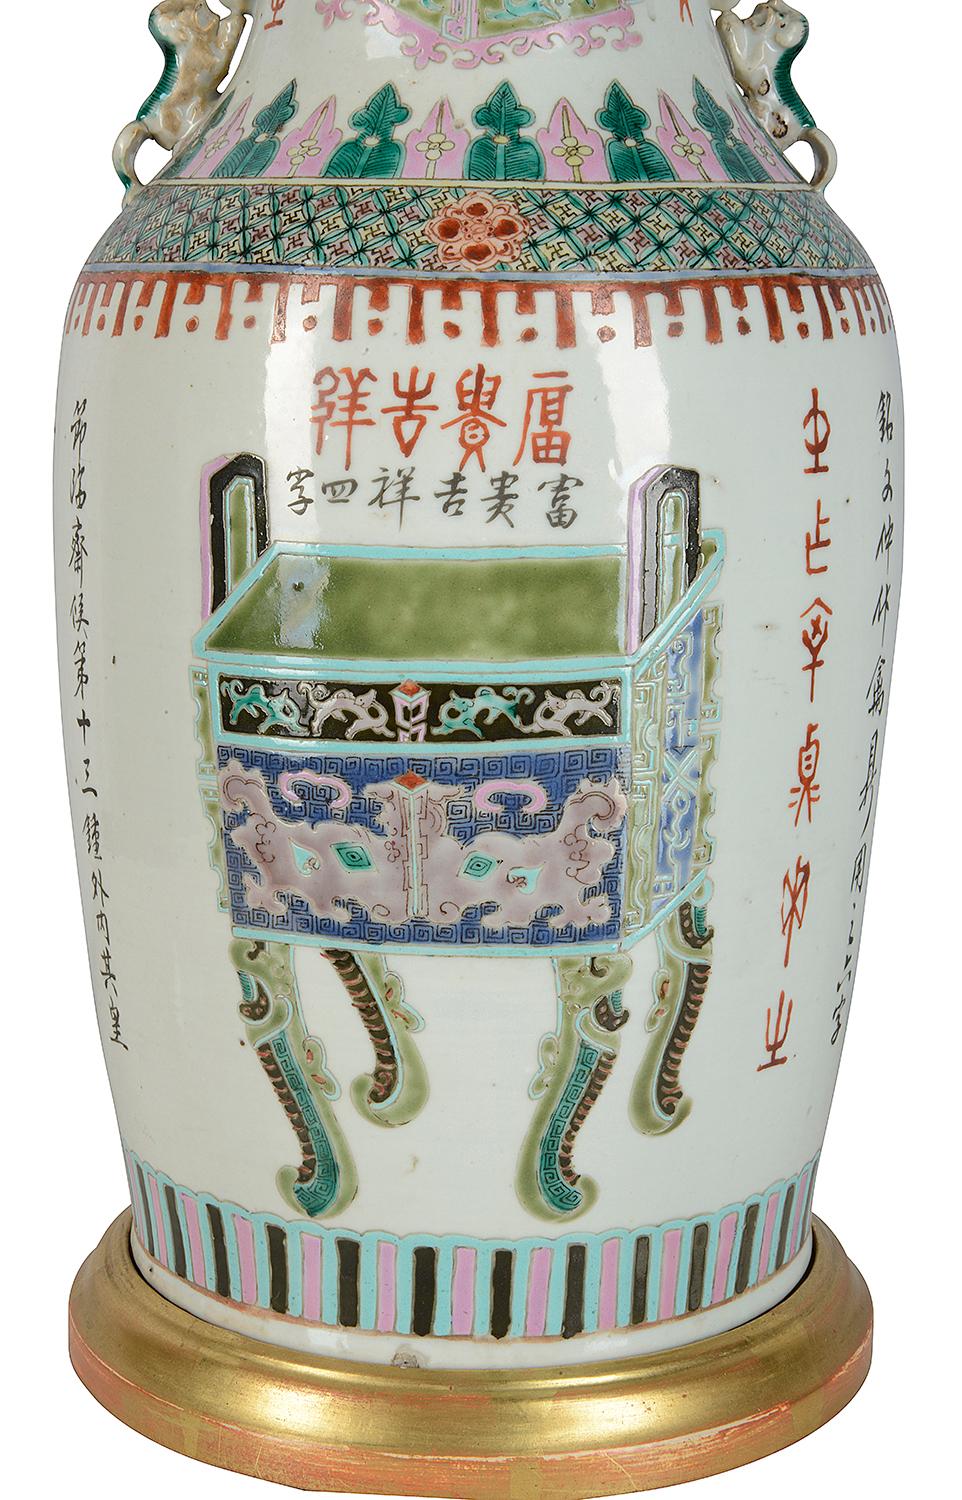 Vase/lampe de bonne qualité de la famille verte chinoise de la fin du XIXe siècle. Décoration classique de motifs et de symboles verts, chien mythique de fausses poignées de chaque côté. Monté sur une base et un couvercle en bois doré.